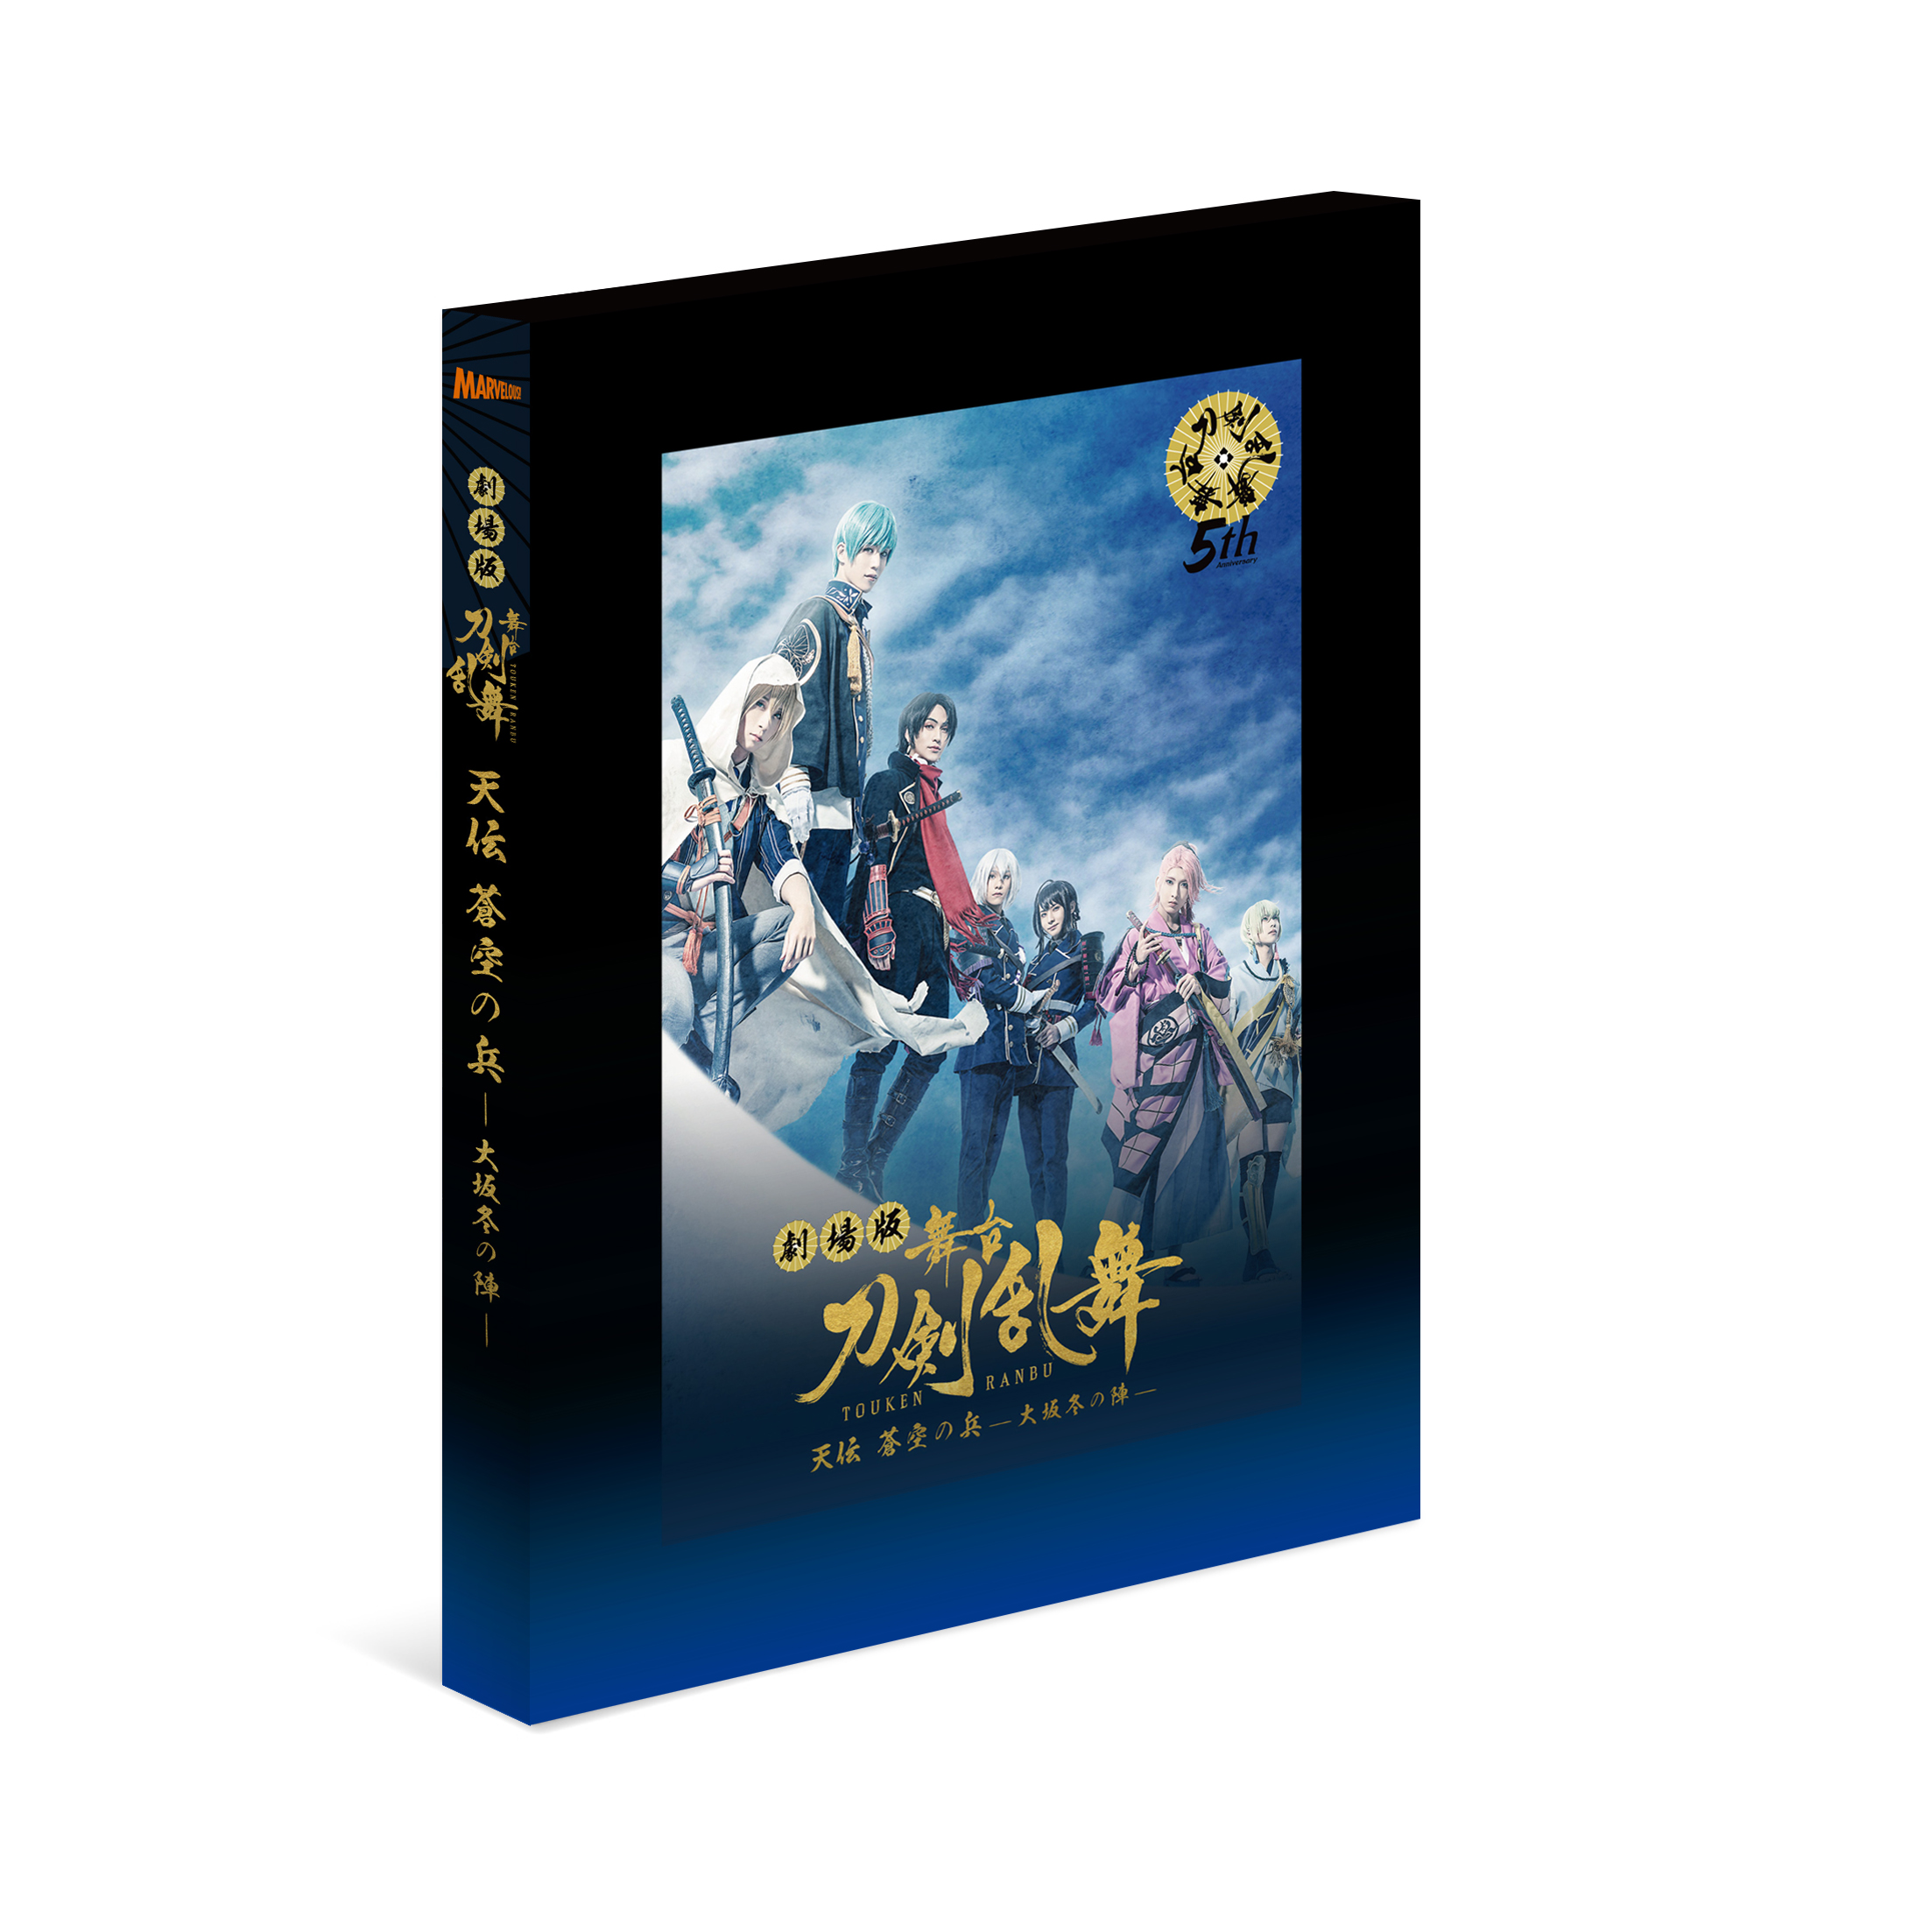 舞台『刀剣乱舞』綺伝 いくさ世の徒花 Blu-ray/DVD - マーベラス